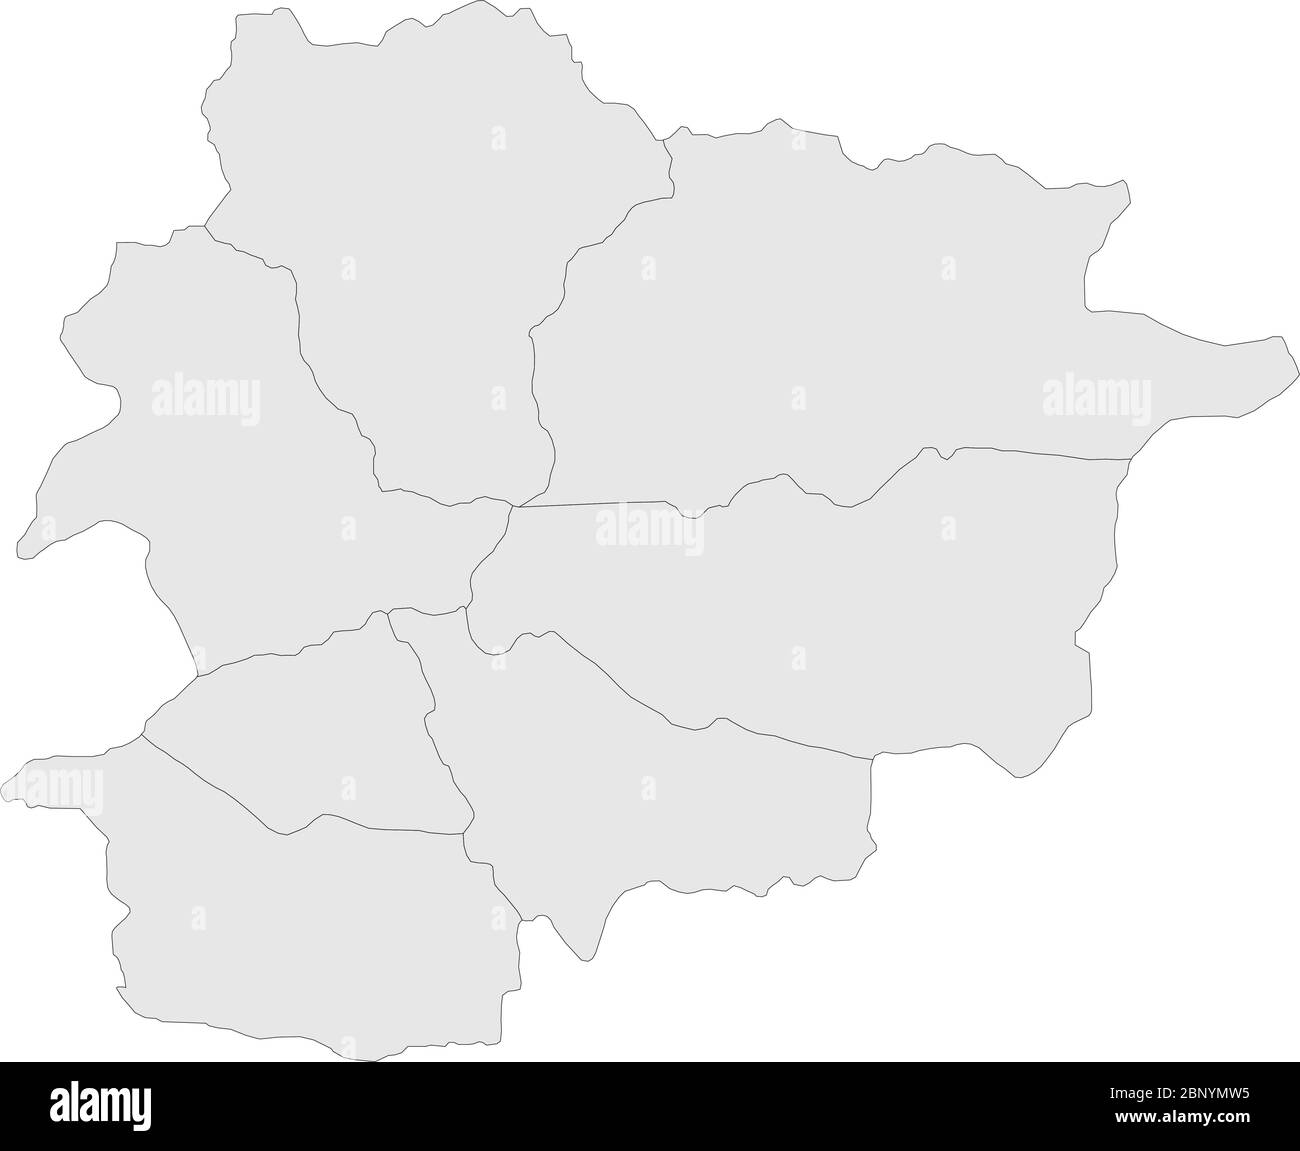 Mappa politica di Andorra. Sfondo grigio chiaro. Concetti aziendali, sfondi e sfondo. Illustrazione Vettoriale